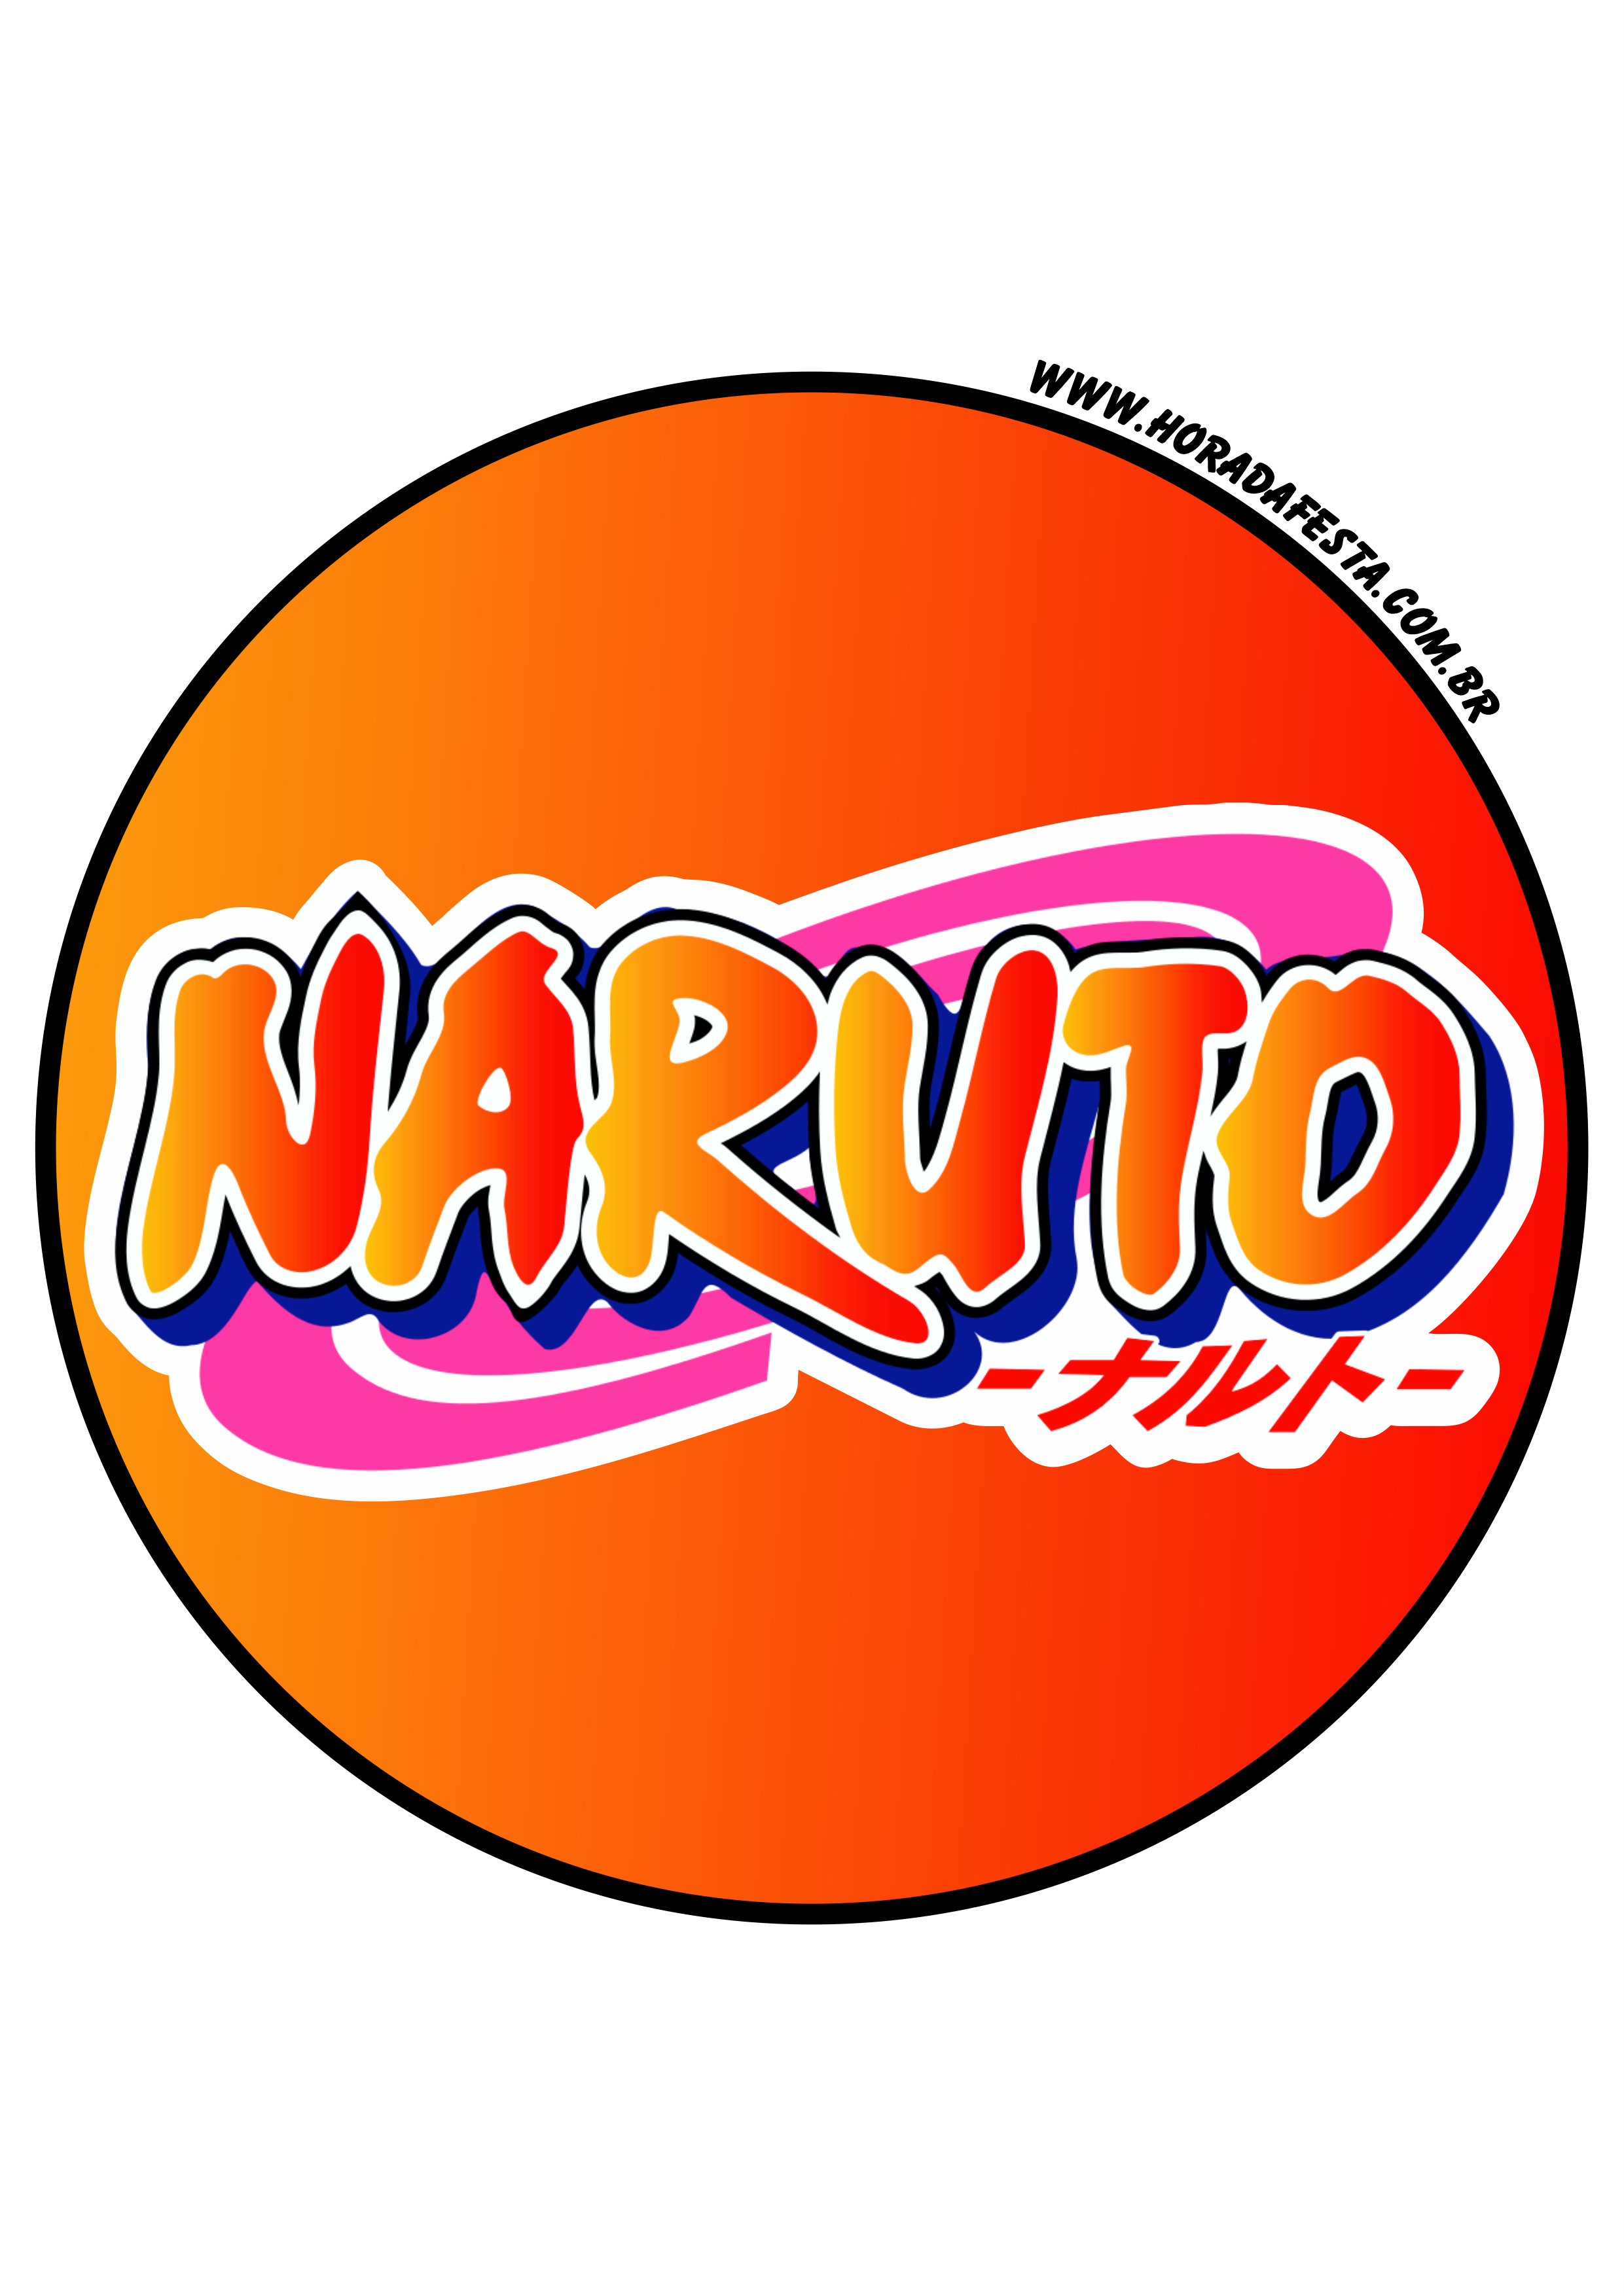 Naruto clássico desenho fofinho cute anime artes gráficas imagem sem fundo  png